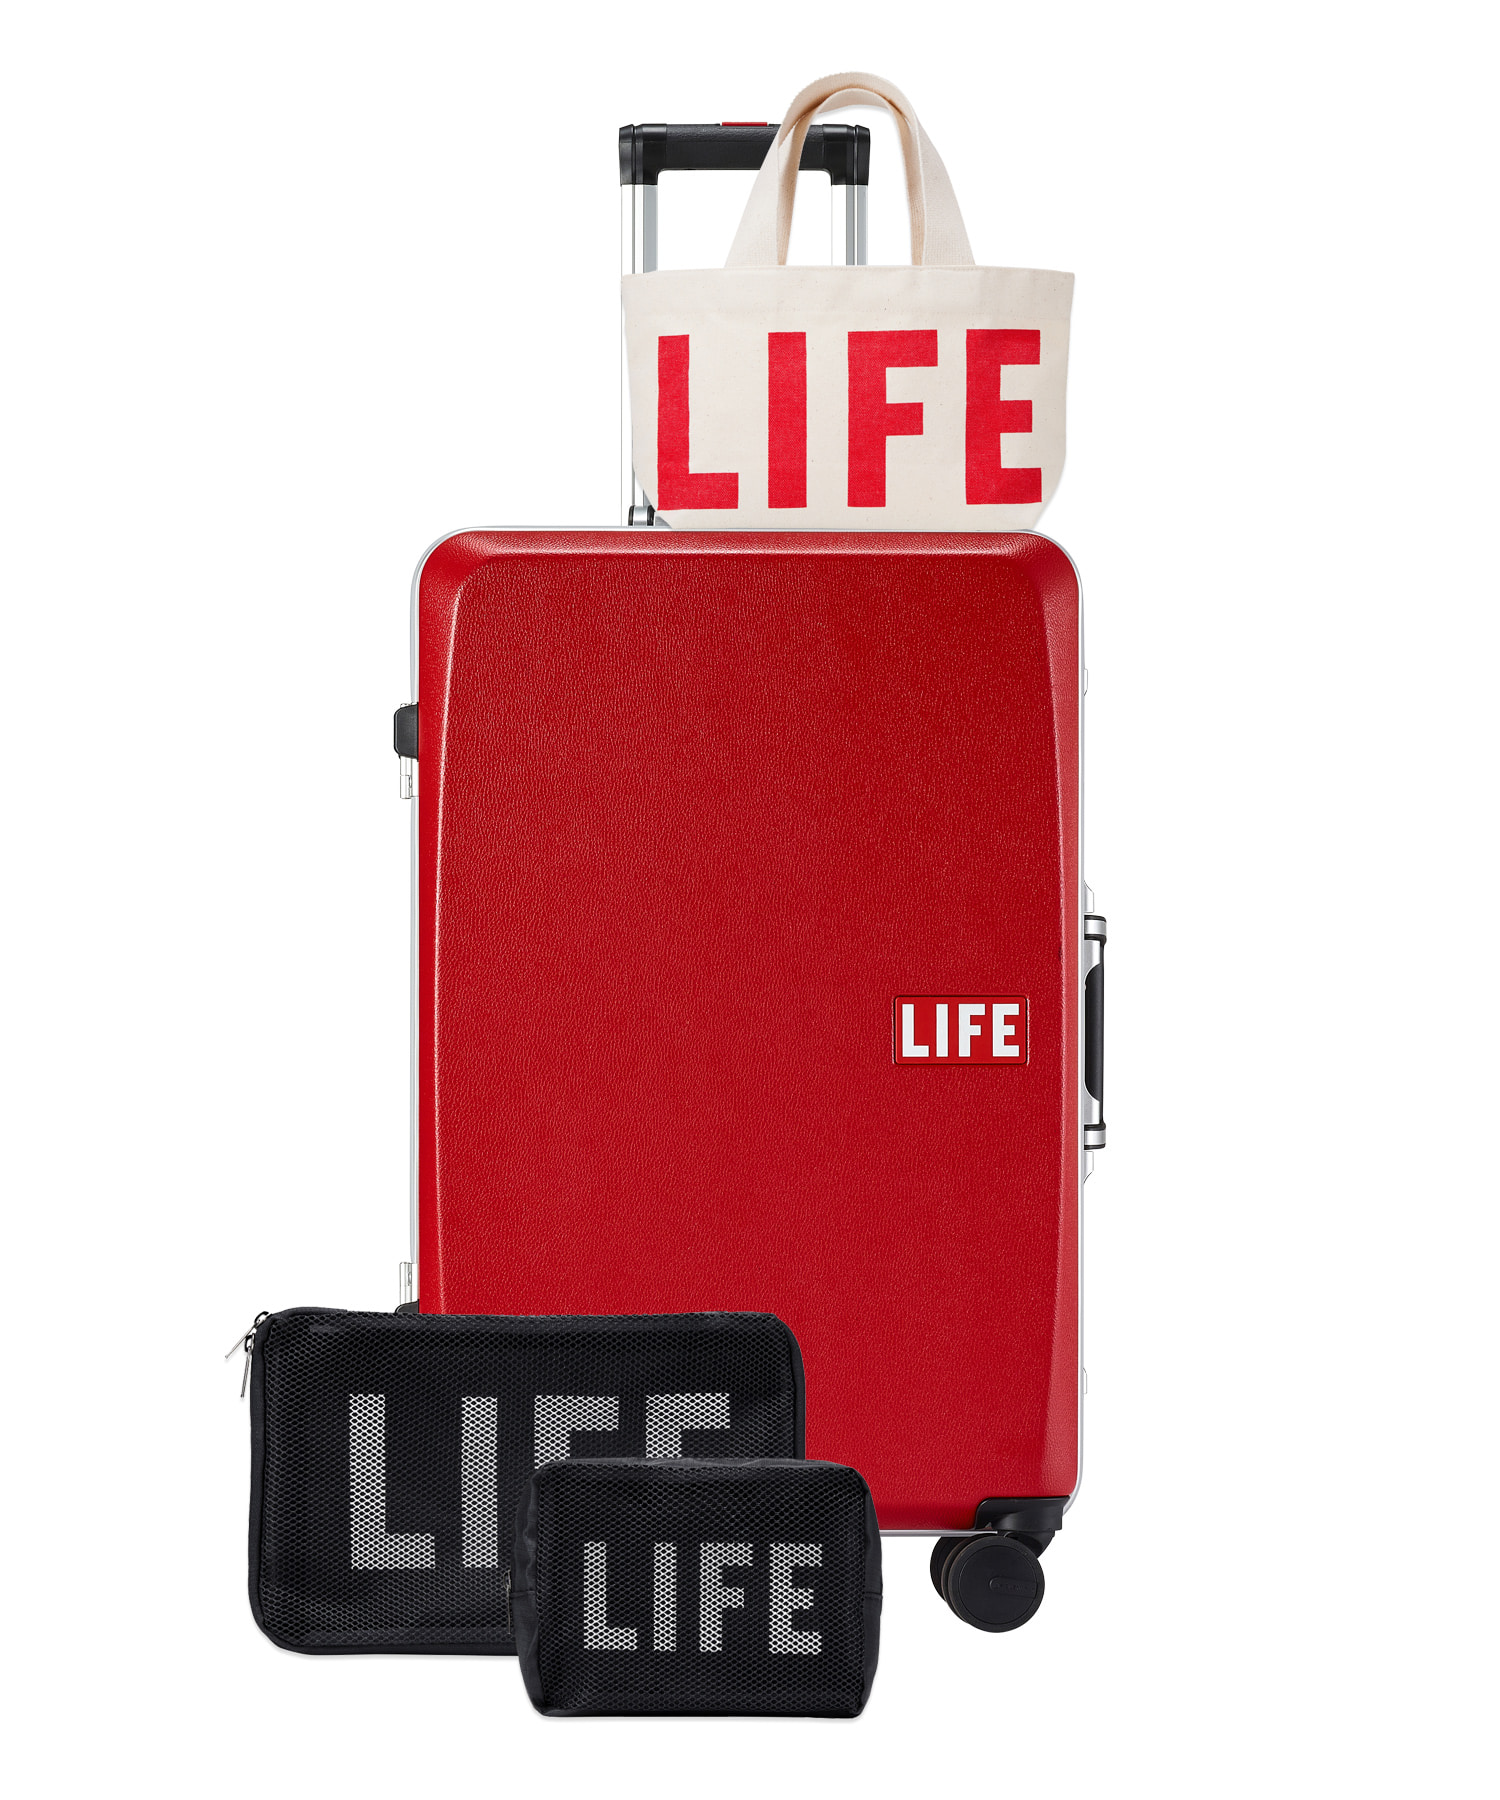 자체브랜드 [회원전용할인] LIFE CLASSIC LUGGAGE 61L_RED 라이프,LIFE, LIFE ARCHIVE, 일회용 카메라, 카메라